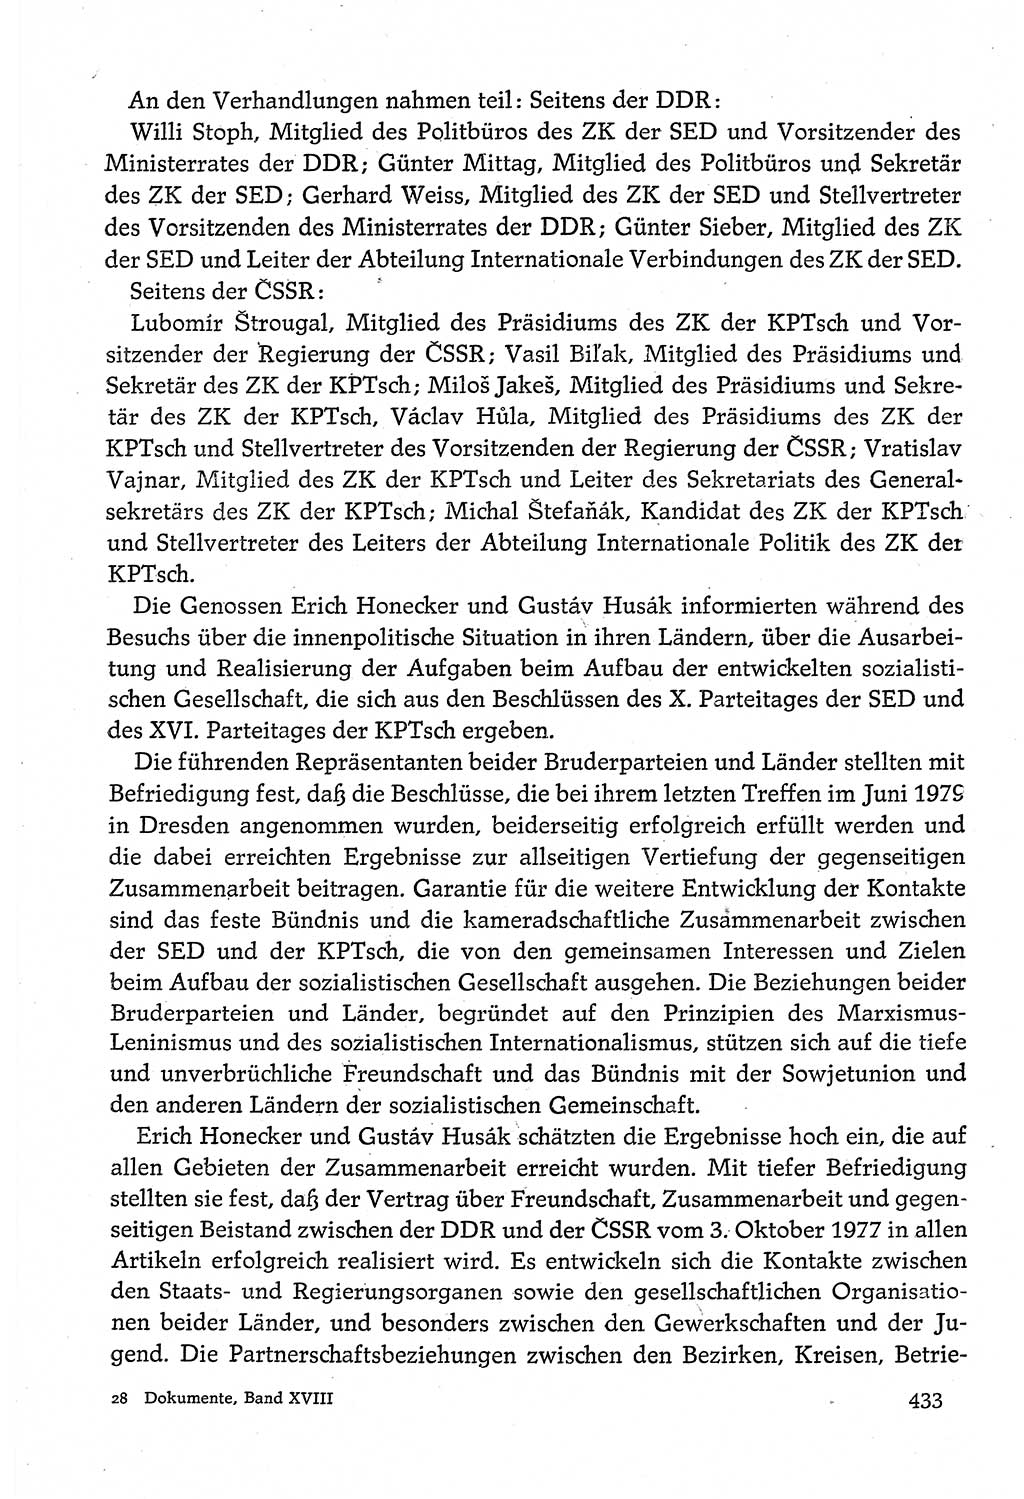 Dokumente der Sozialistischen Einheitspartei Deutschlands (SED) [Deutsche Demokratische Republik (DDR)] 1980-1981, Seite 433 (Dok. SED DDR 1980-1981, S. 433)